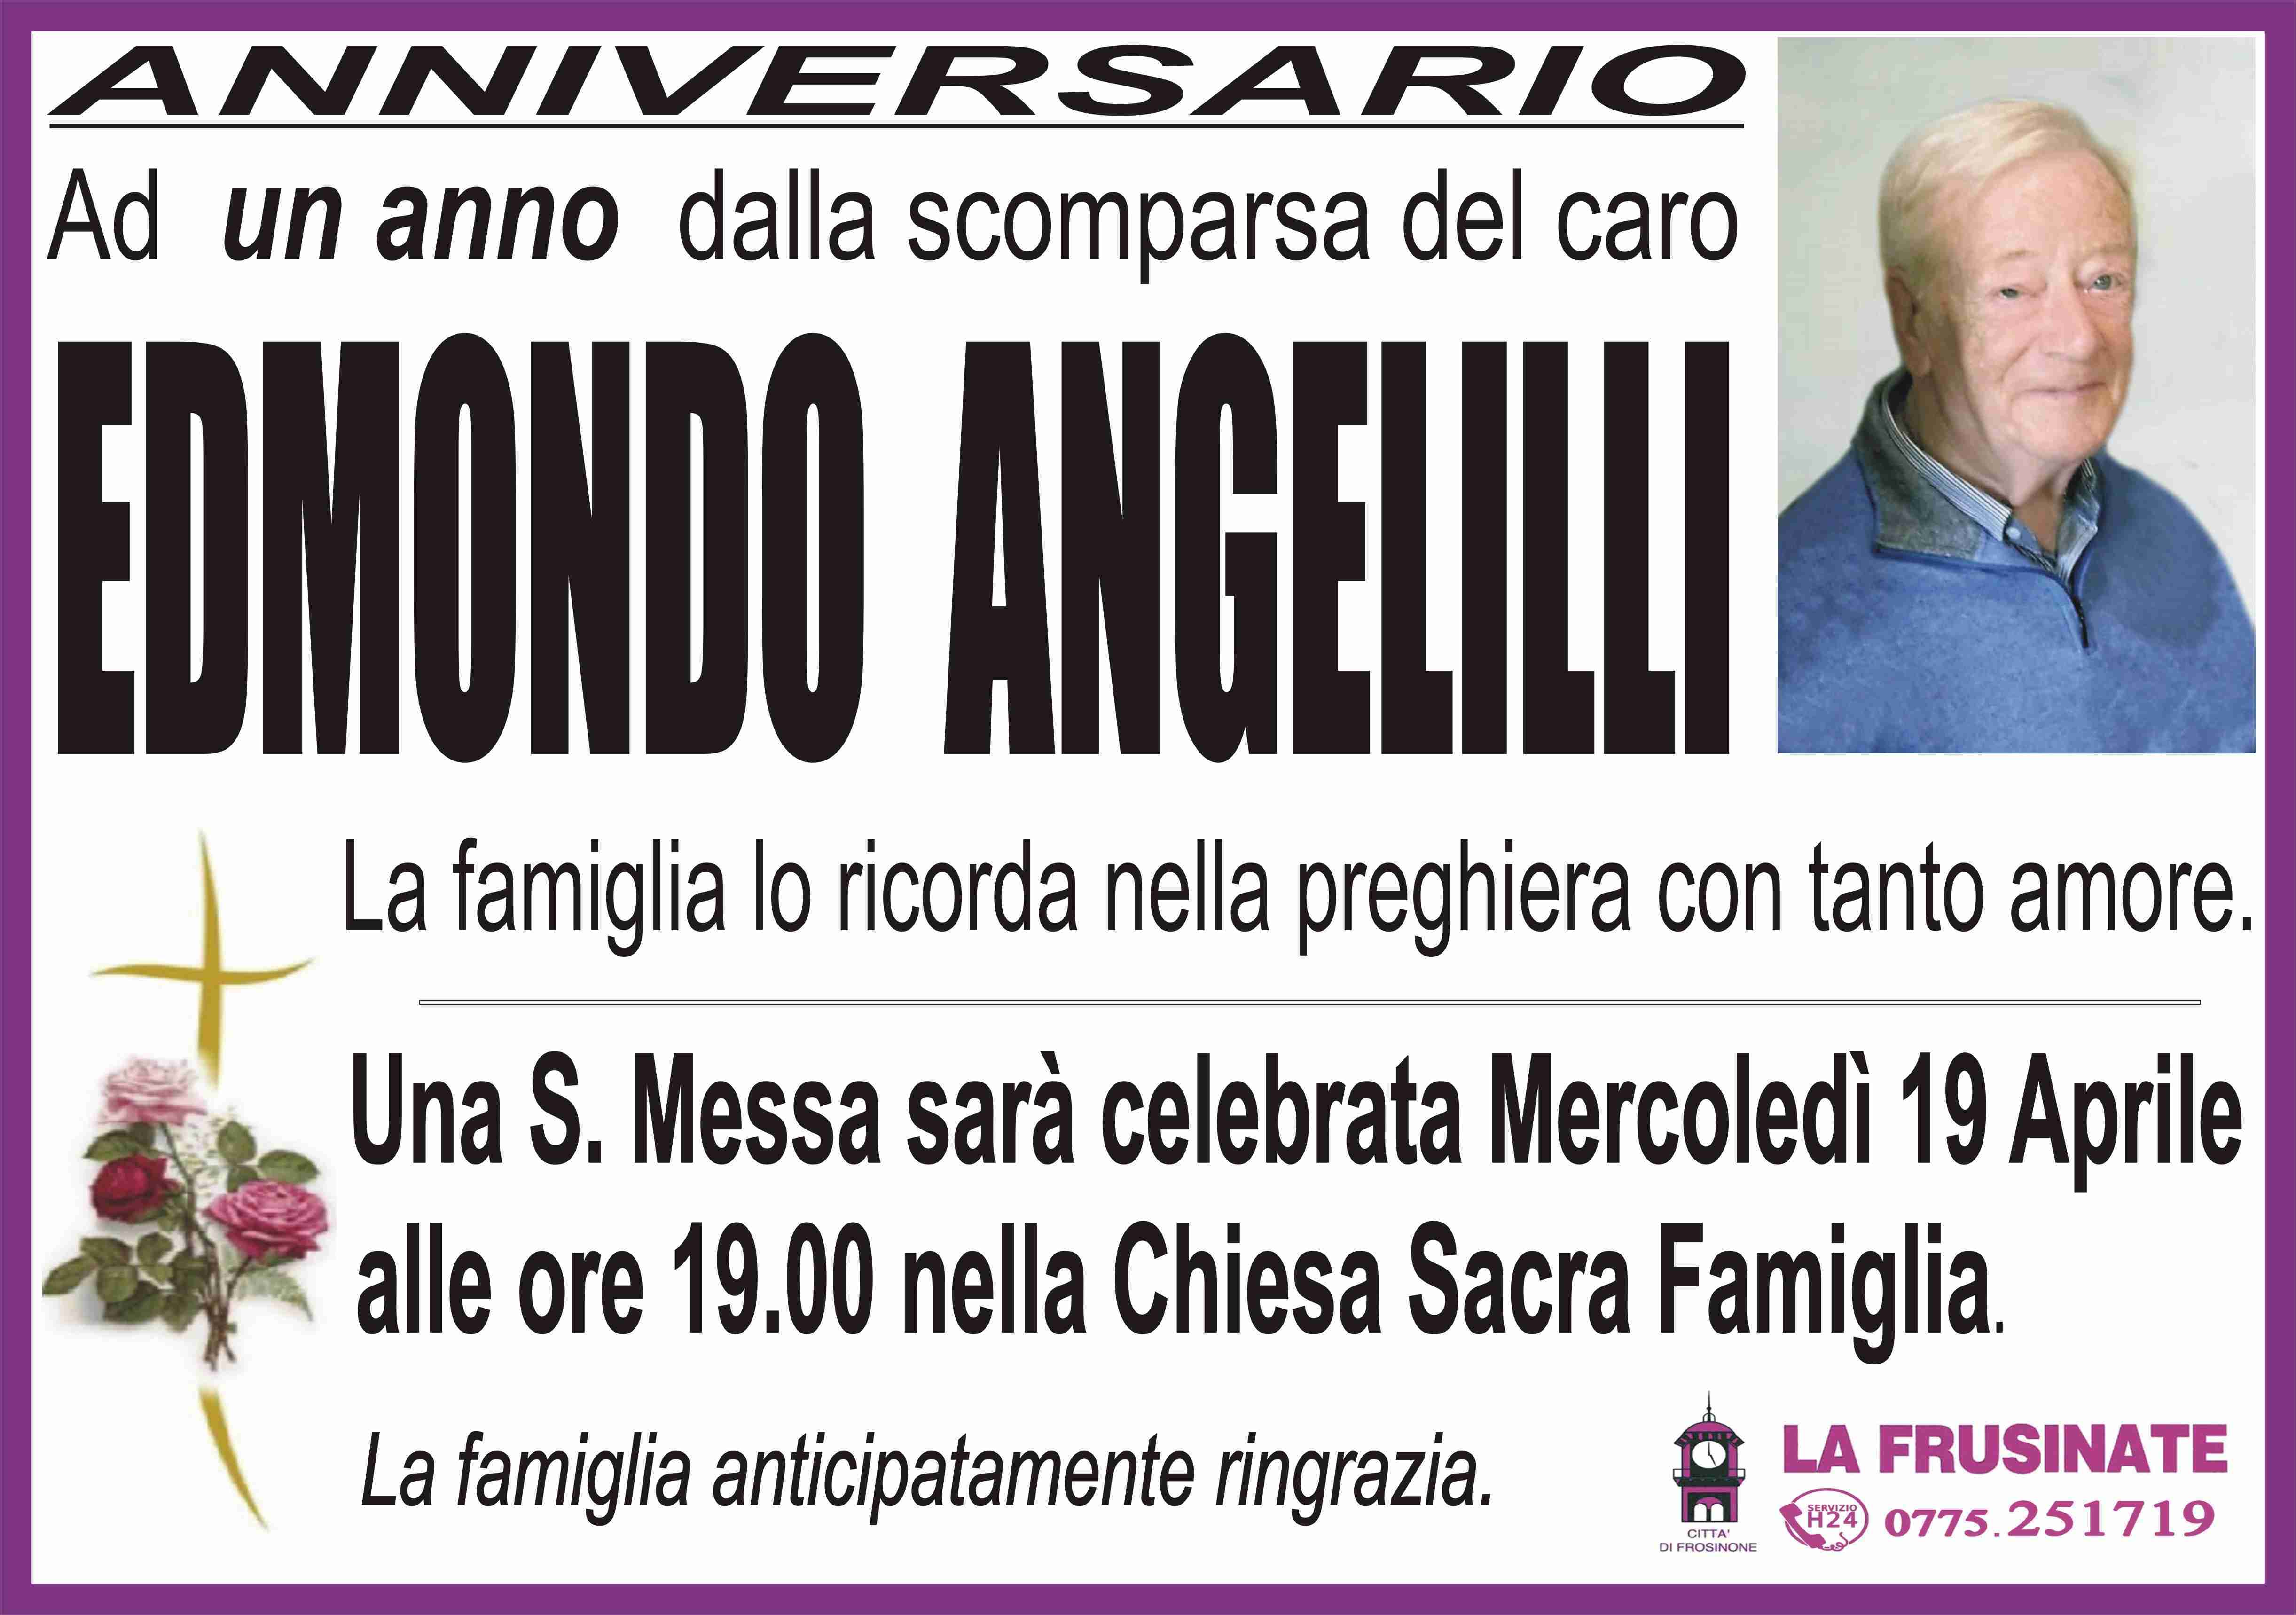 Edmondo Angelilli